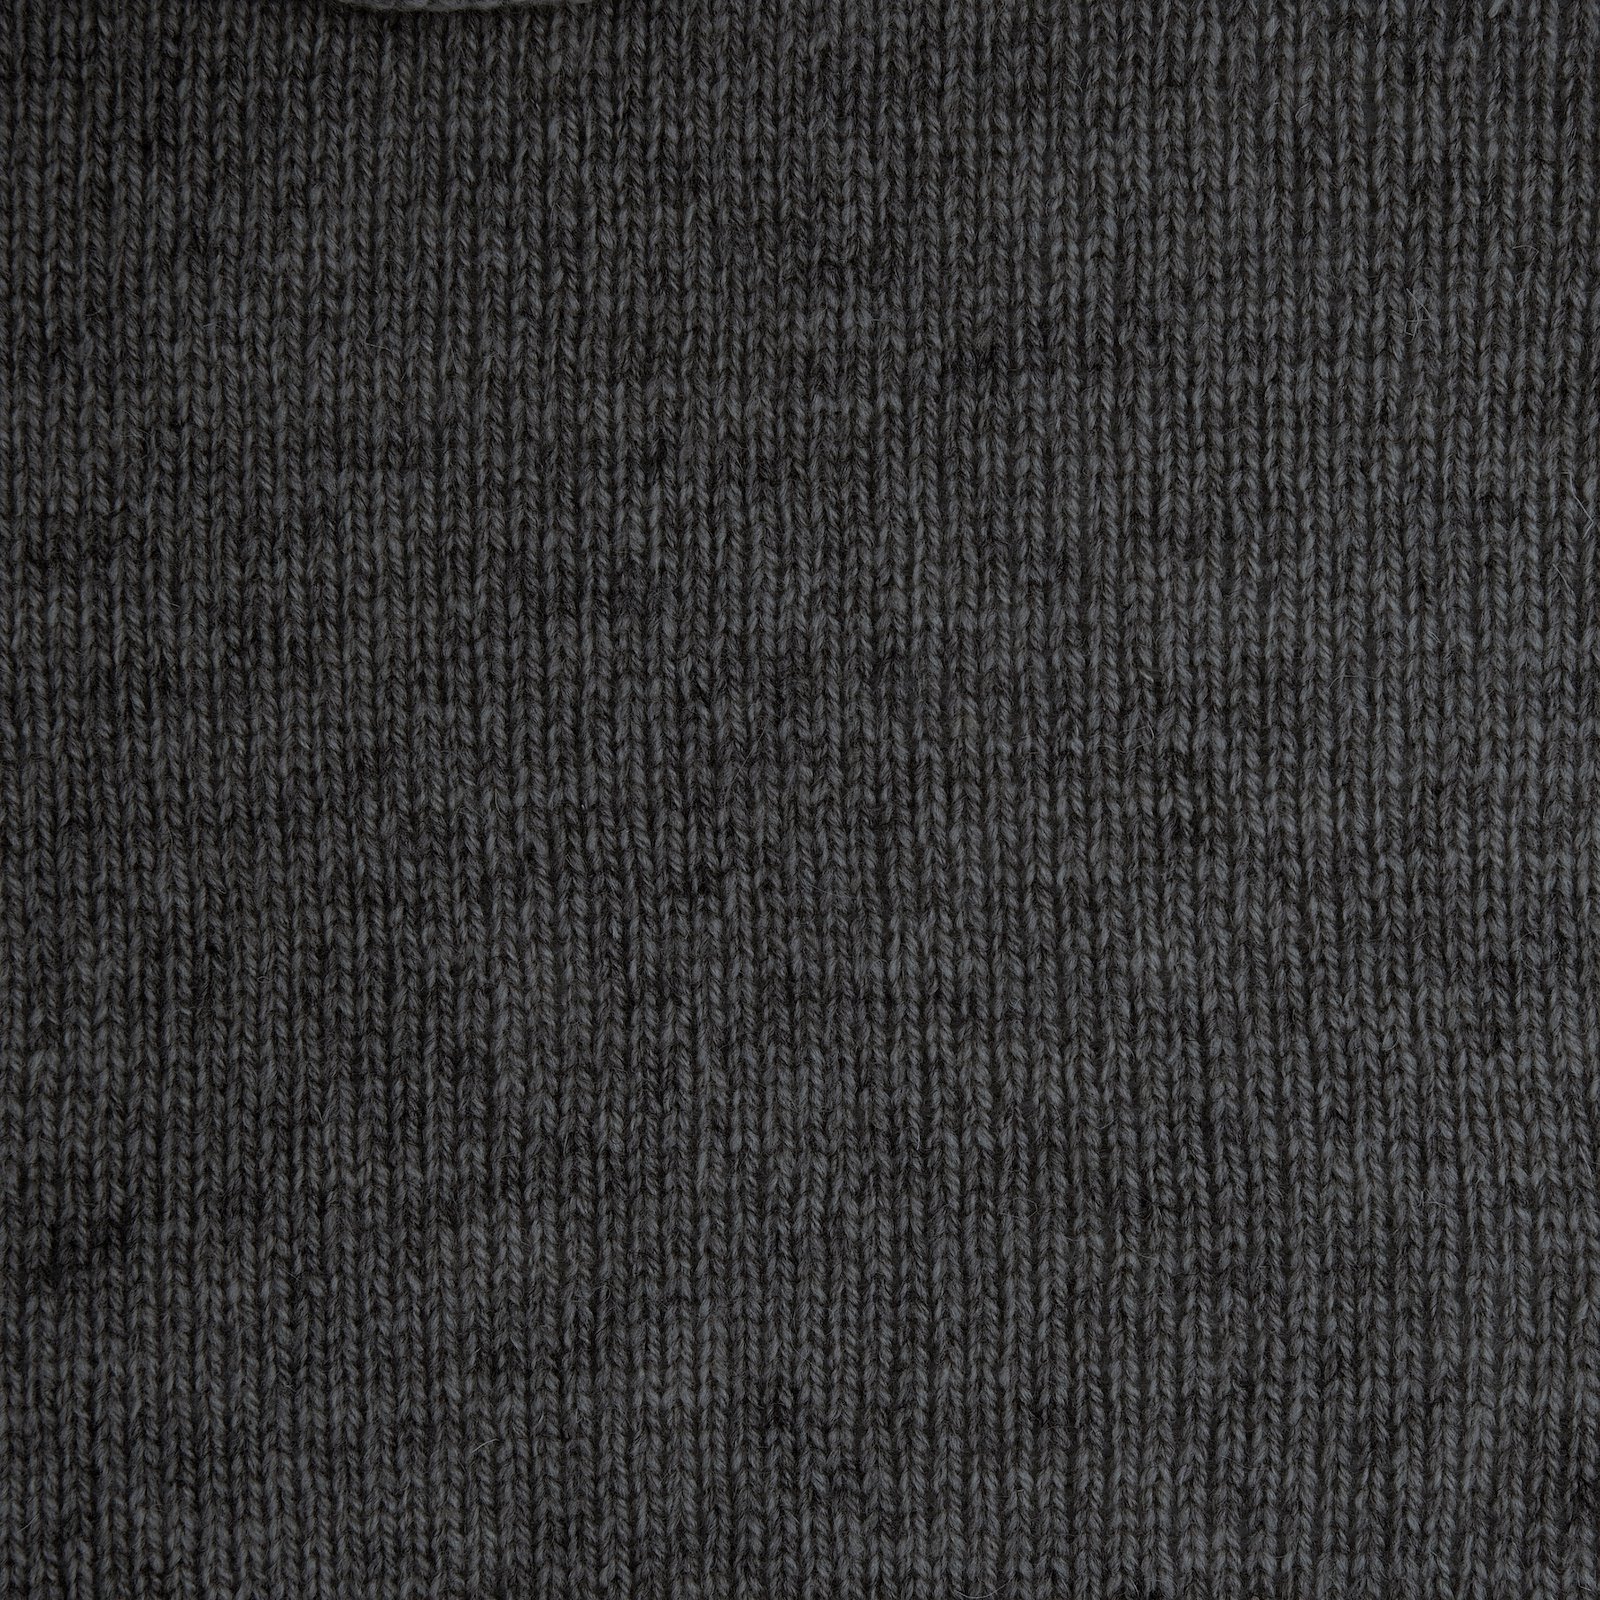 FRAYA, 100% wool yarn Mindful, dark grey melange